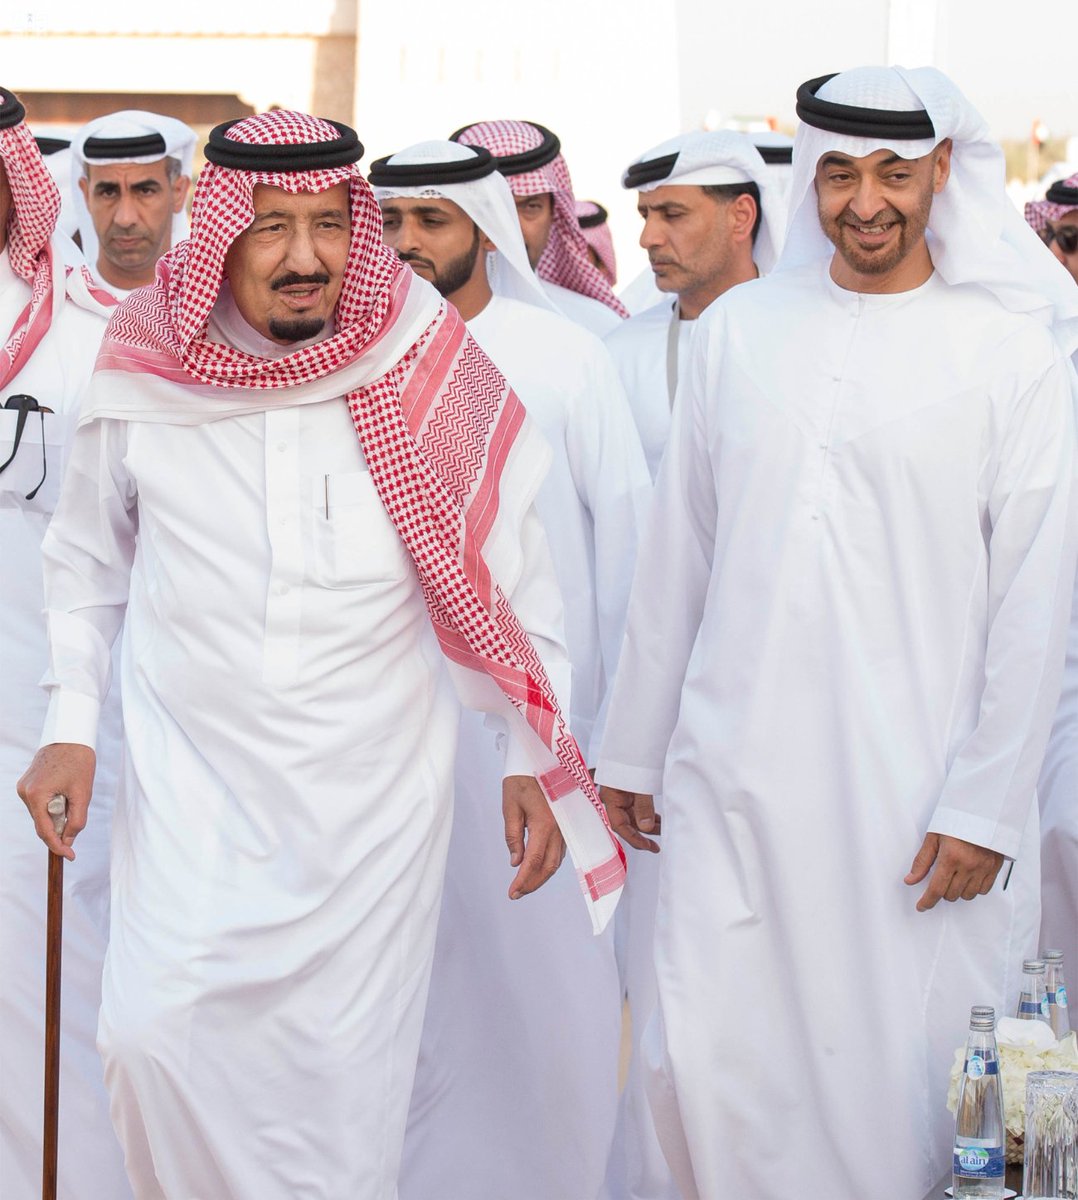 وكالة الأنباء الإماراتية : علاقات إماراتية – سعودية استراتيجية